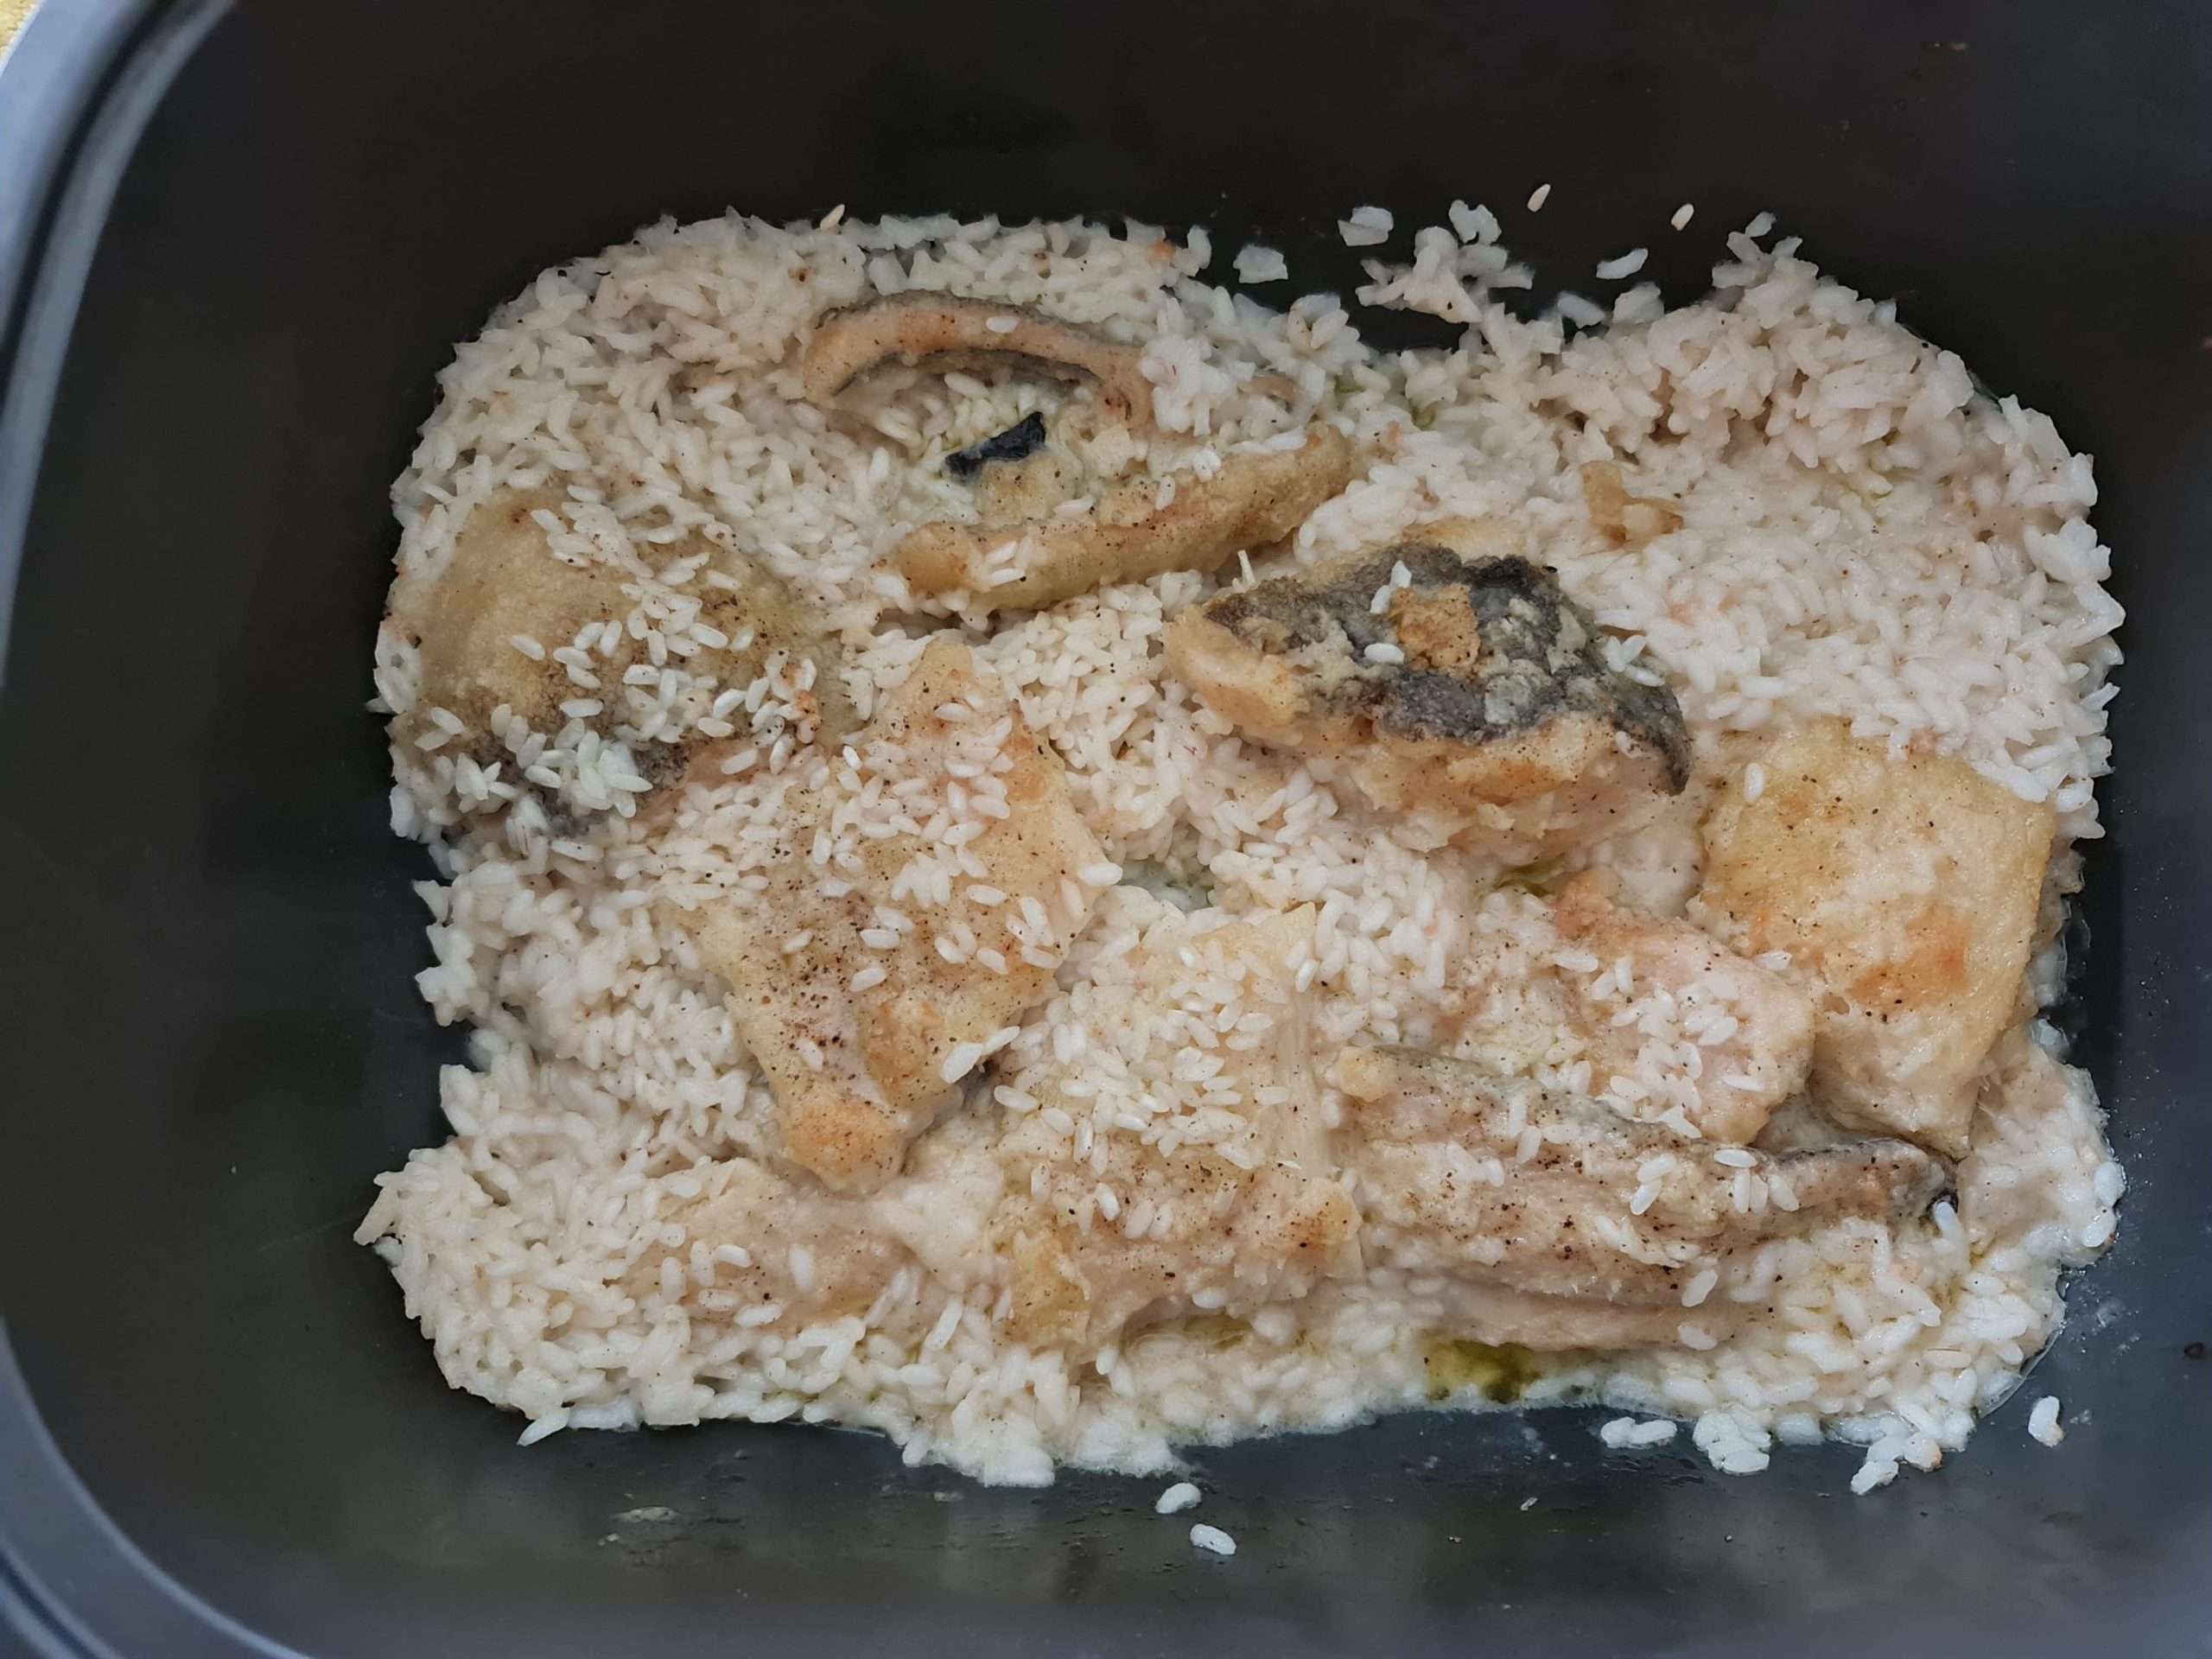 Résultat après cuisson de la recette de la morue au riz grecque